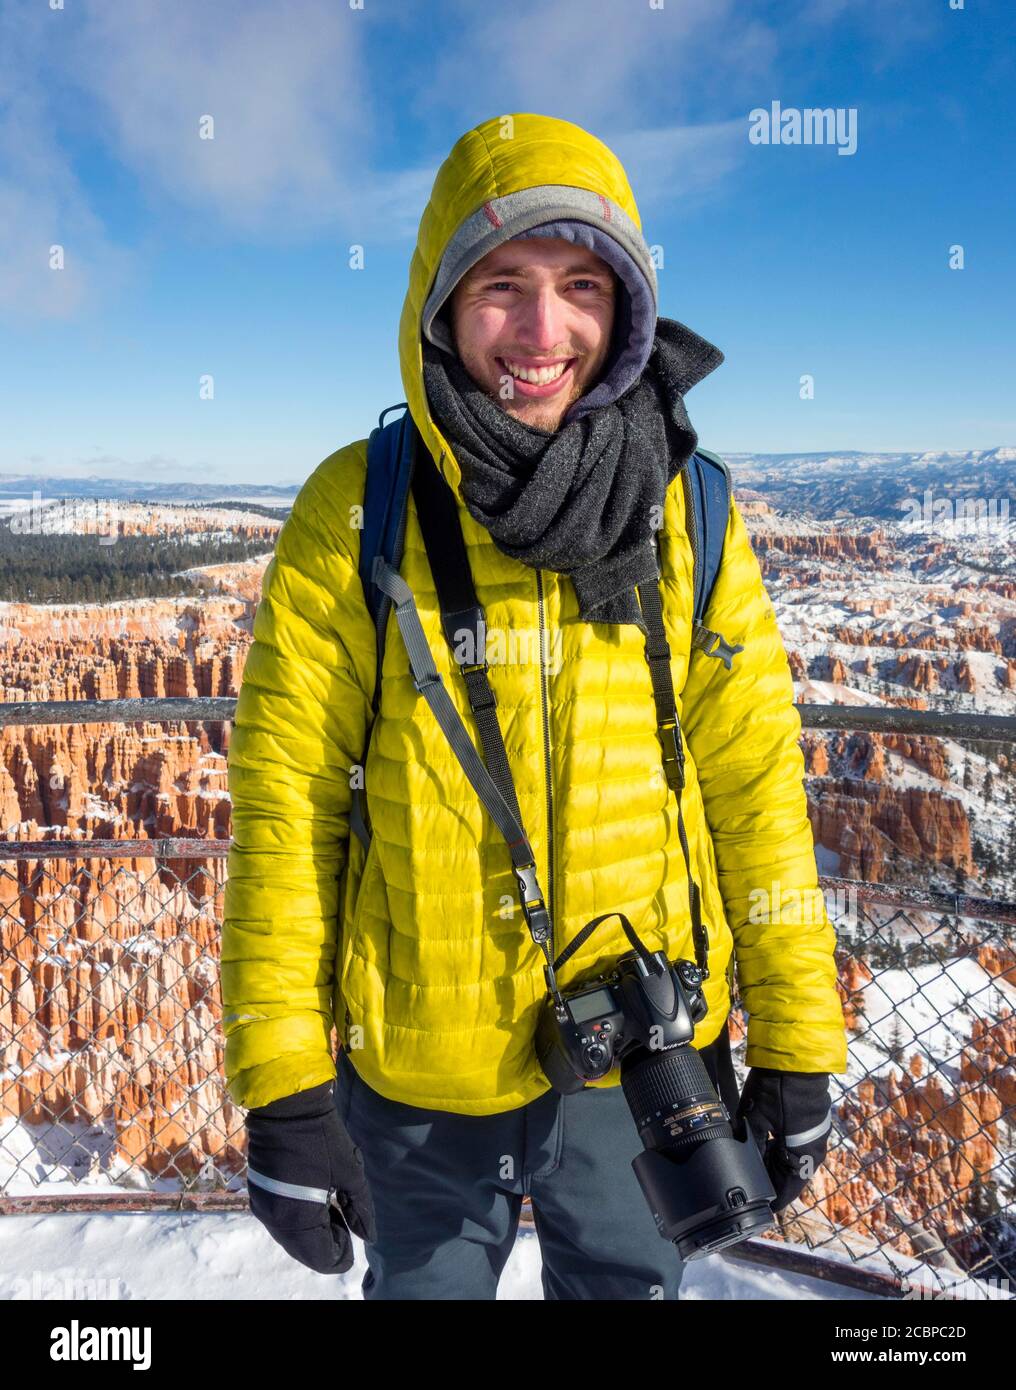 Porträt, junger Mann in Winterkleidung mit Kamera am Aussichtspunkt, felsige Landschaft mit Hoodoos im Winter, Rim Trail, Bryce Canyon National Park Stockfoto